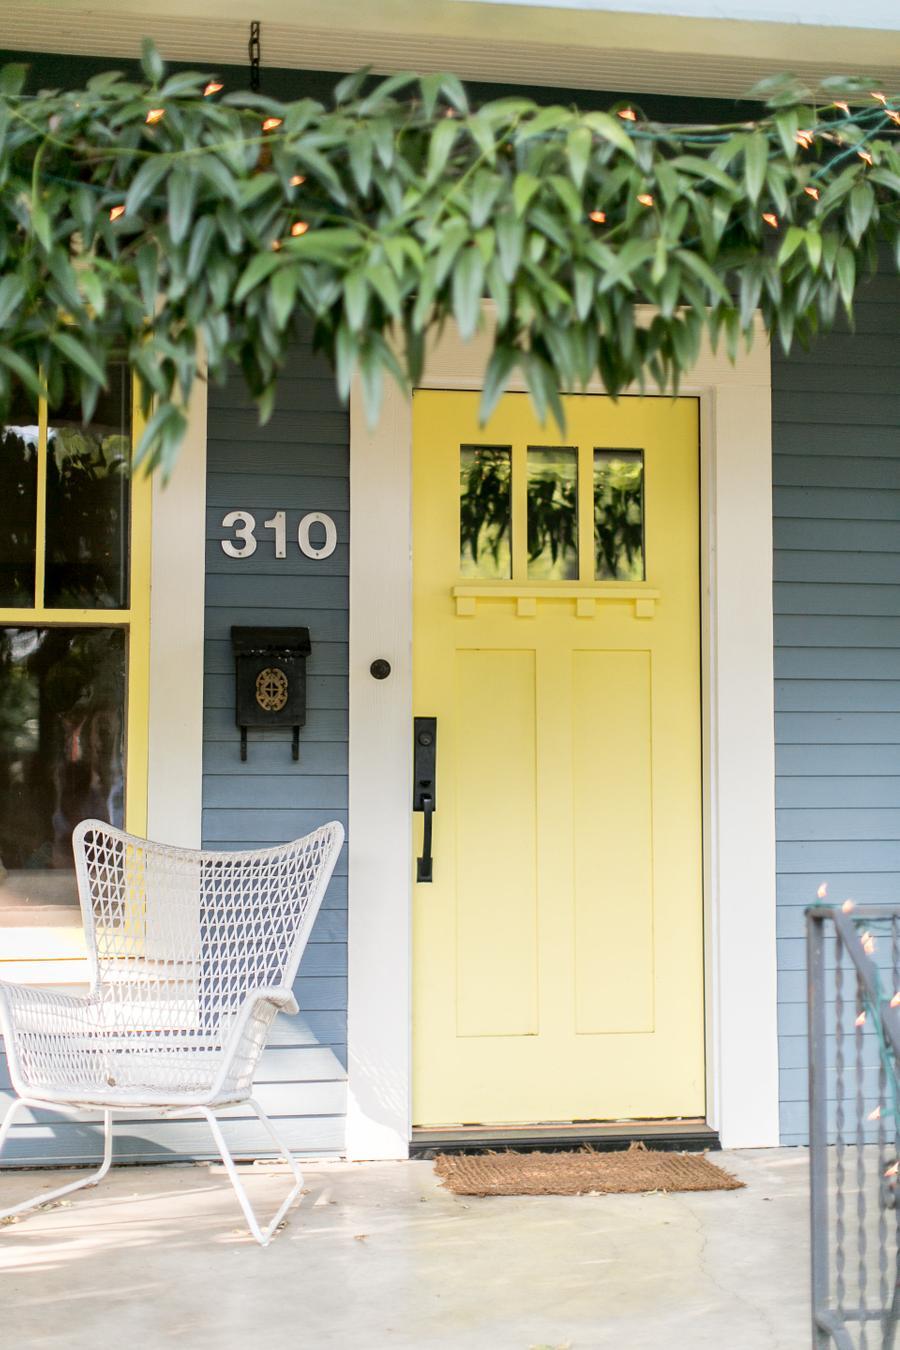 Puerta de entrada a una casa en color amarillo. Tiene manilla negra y el marco de la puerta es blanco. A su costado está el número de la casa, una ventana con marco blanco y detalles amarillos. El color de la casa es azul grisáceo. .